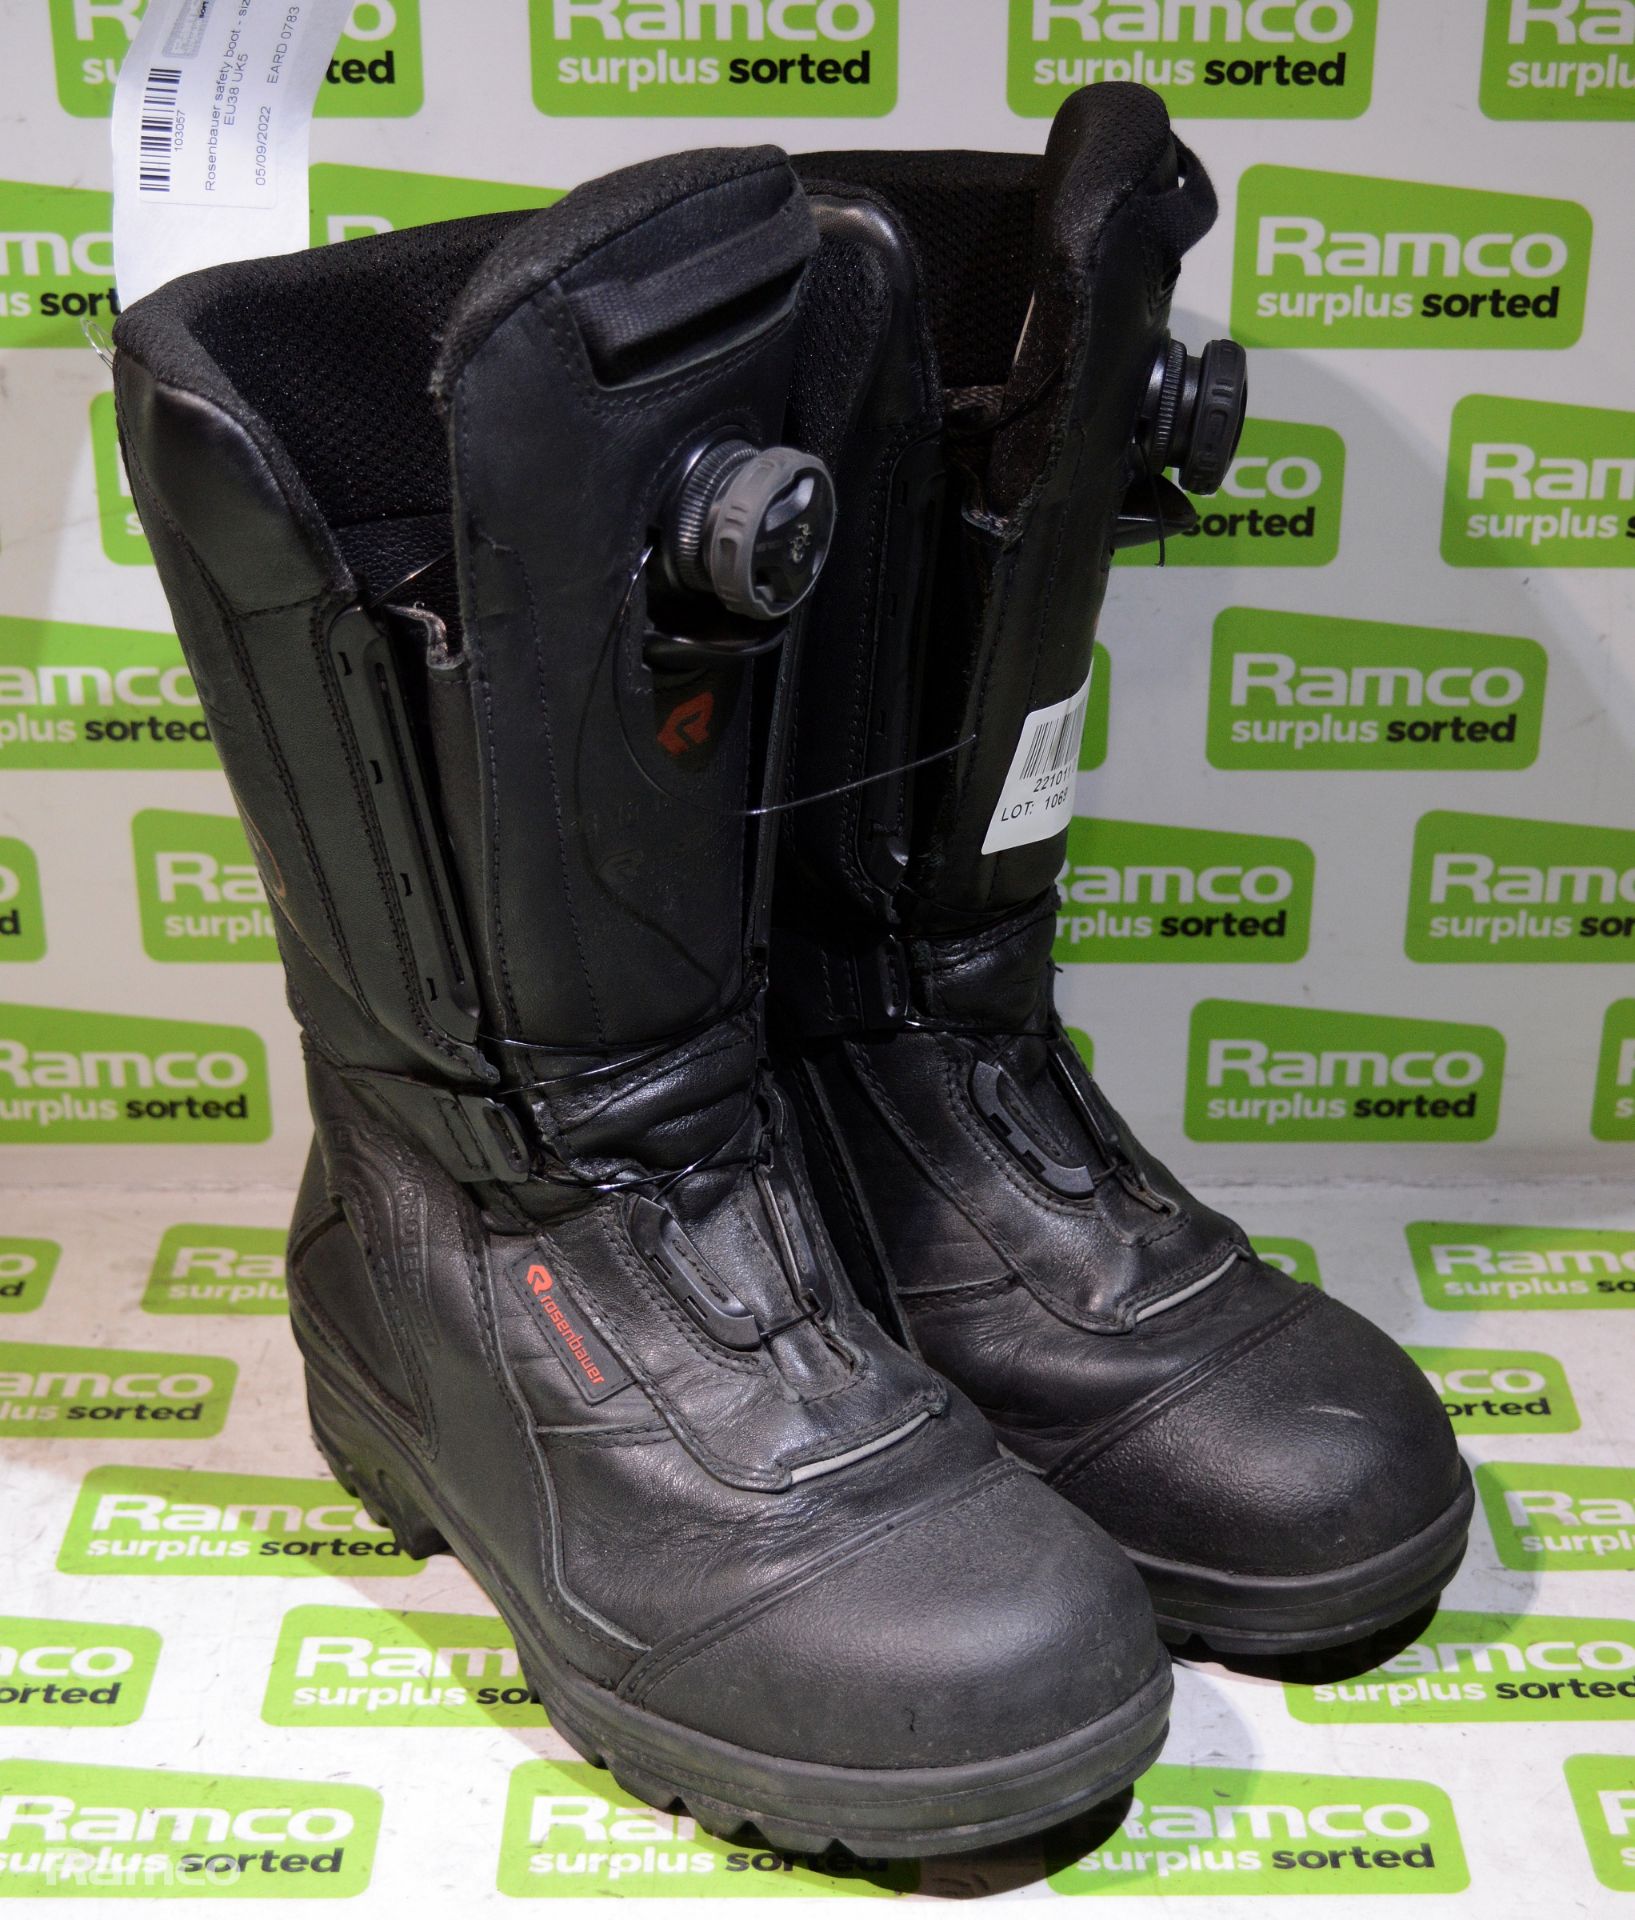 Rosenbauer safety boot - size EU38 UK5